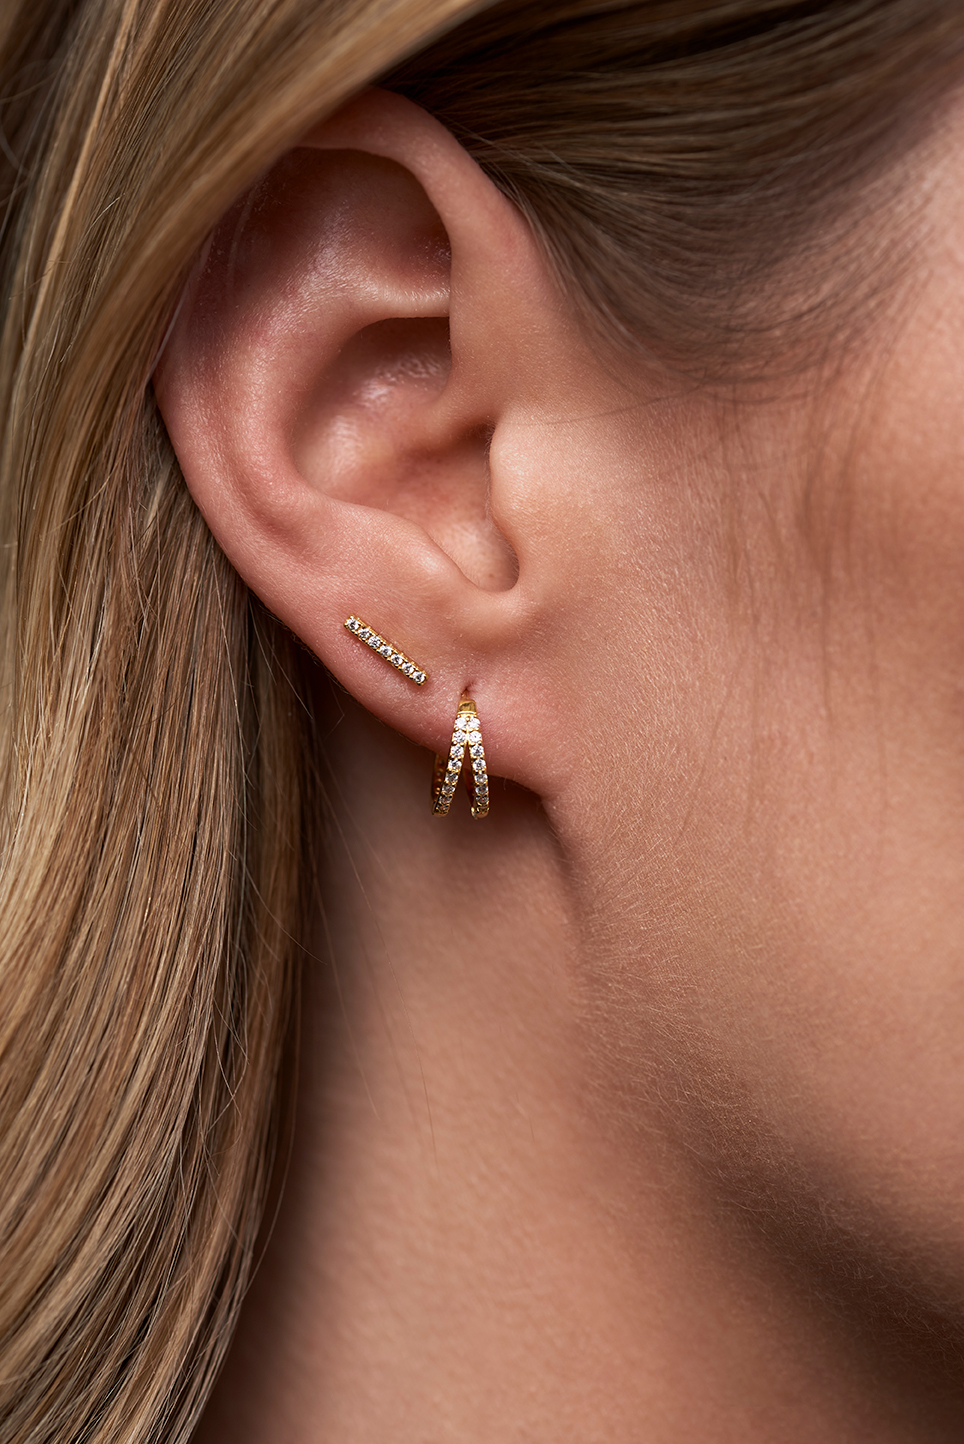 Lookbook photo of an ear with earrings in it.